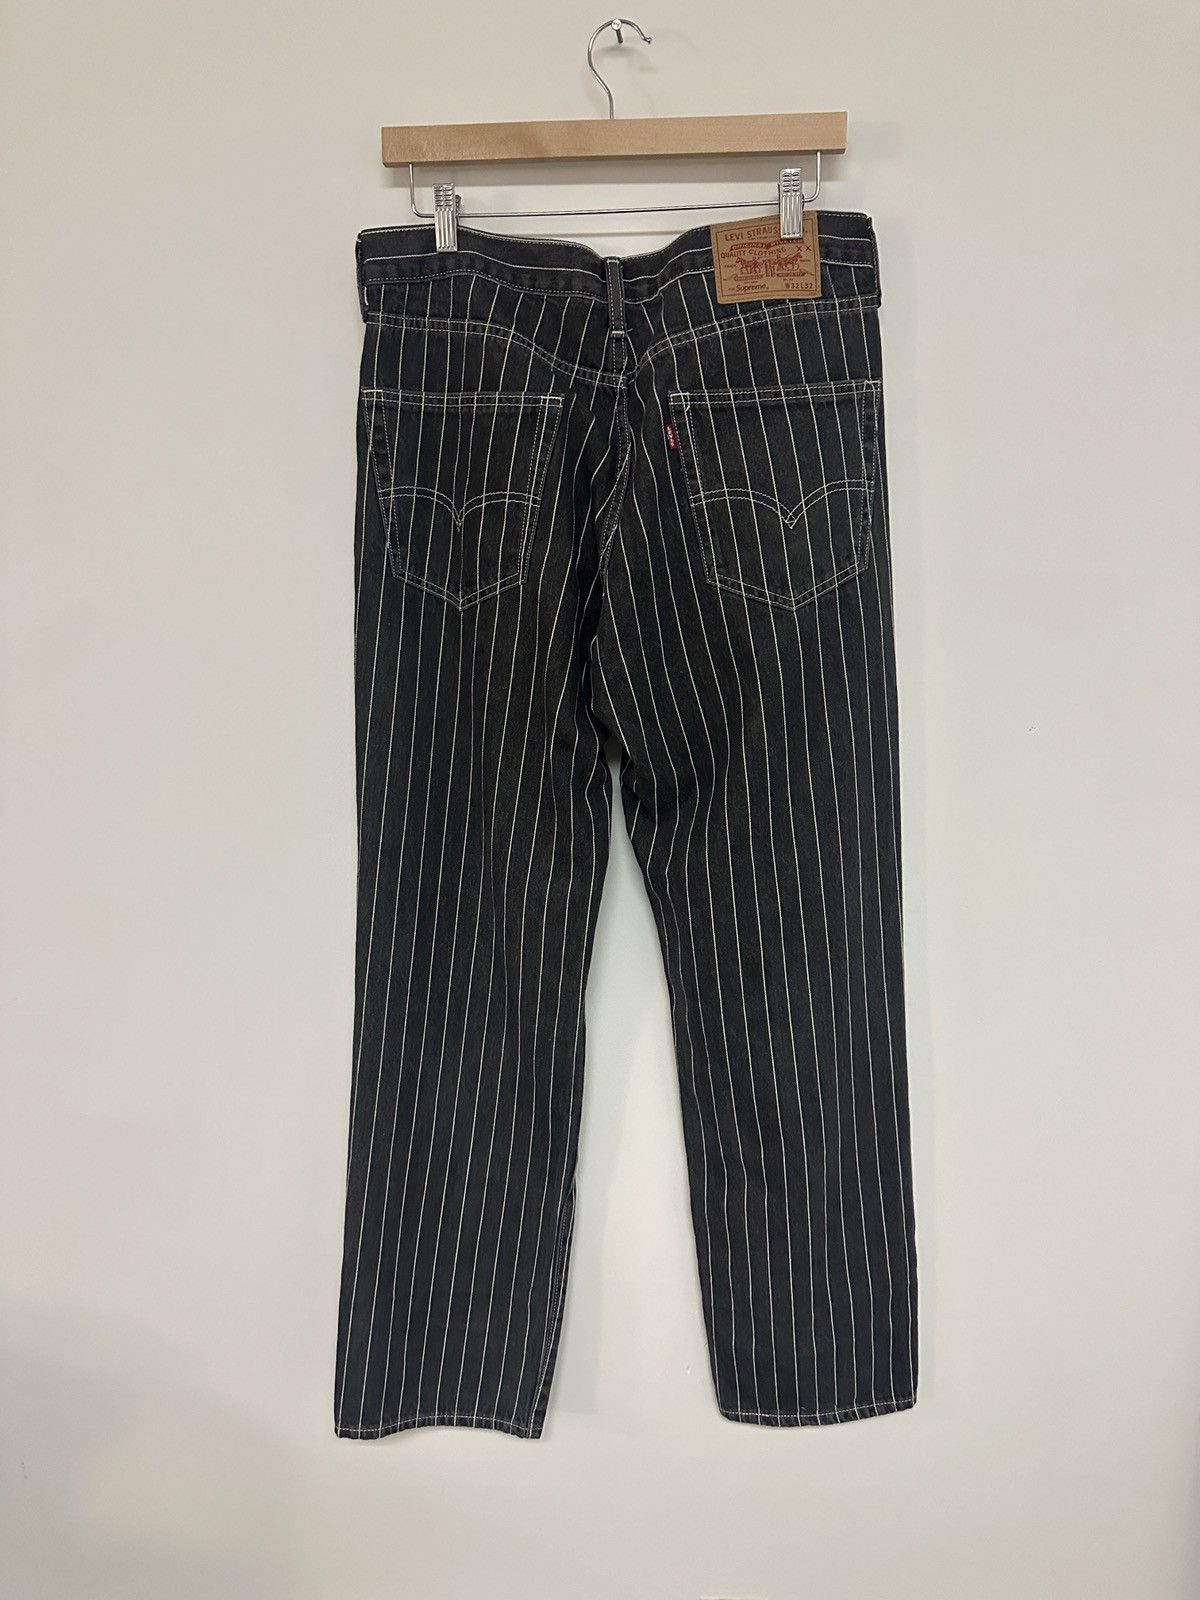 Supreme Supreme Levi's Pinstripe 550 Jeans | Grailed